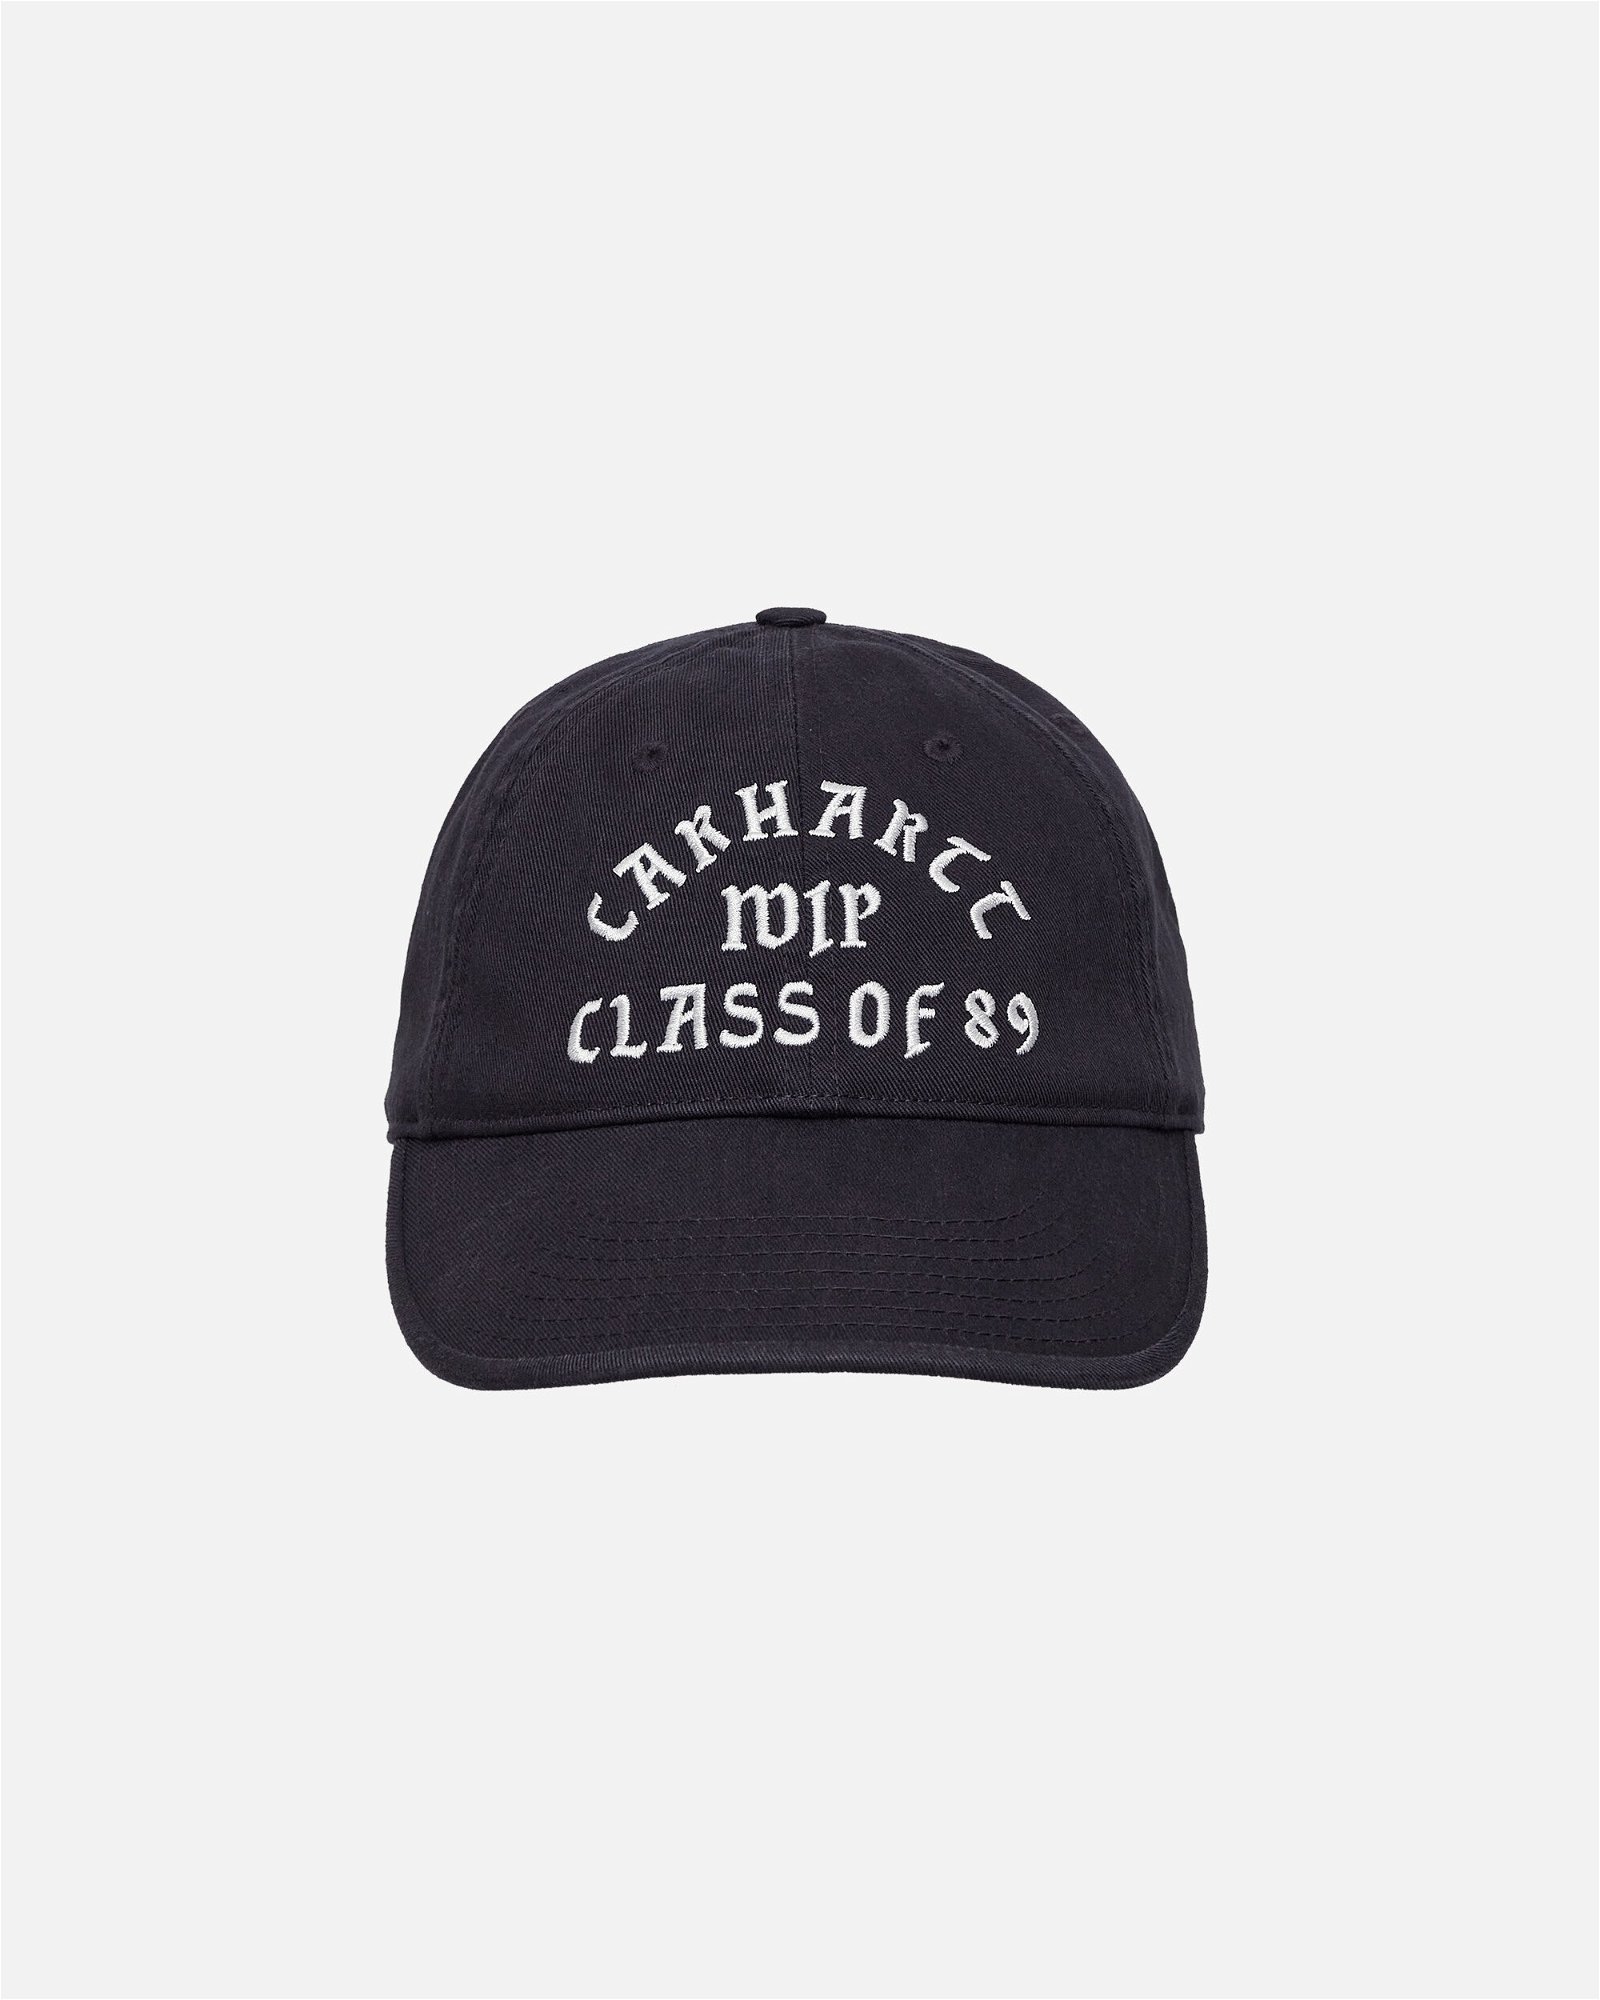 Class of 89 Cap